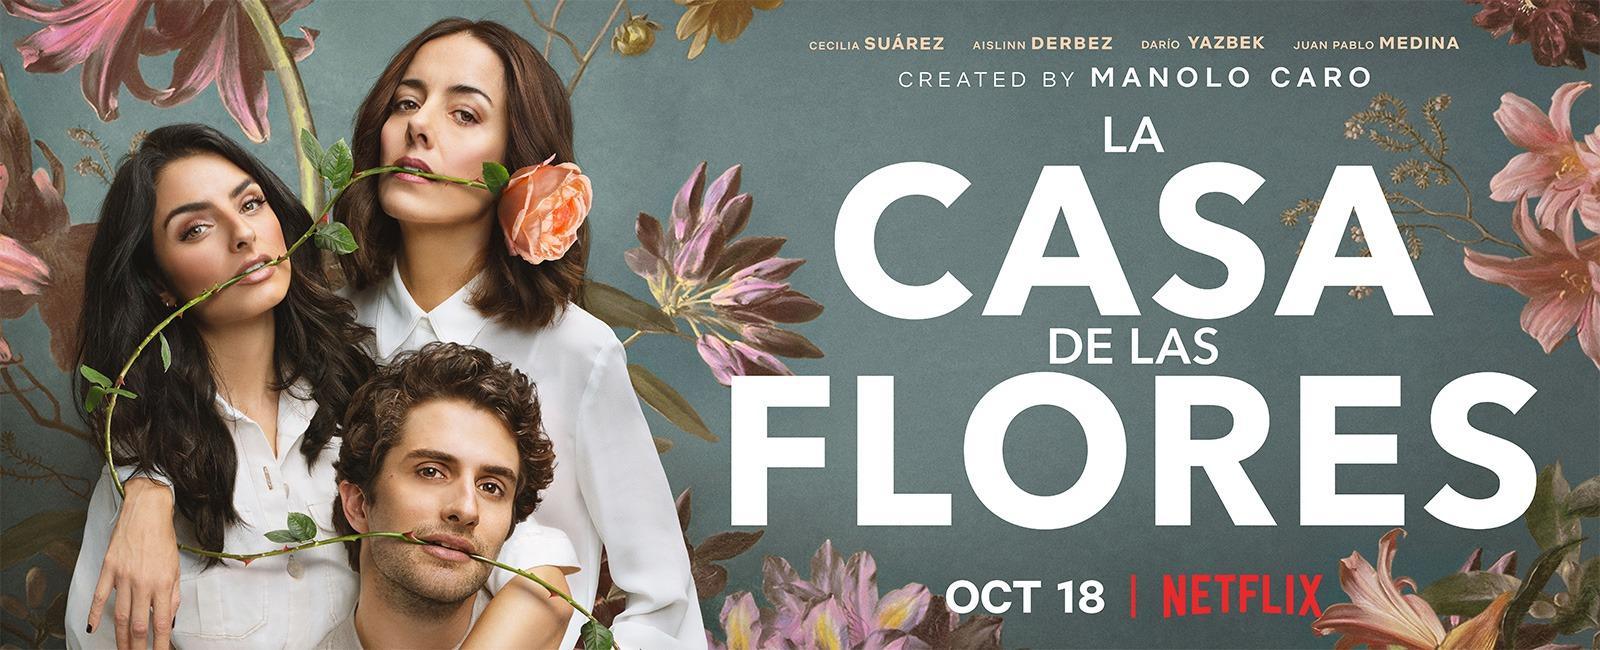 The House of Flowers (La casa de las flores) (TV Series) - Promo